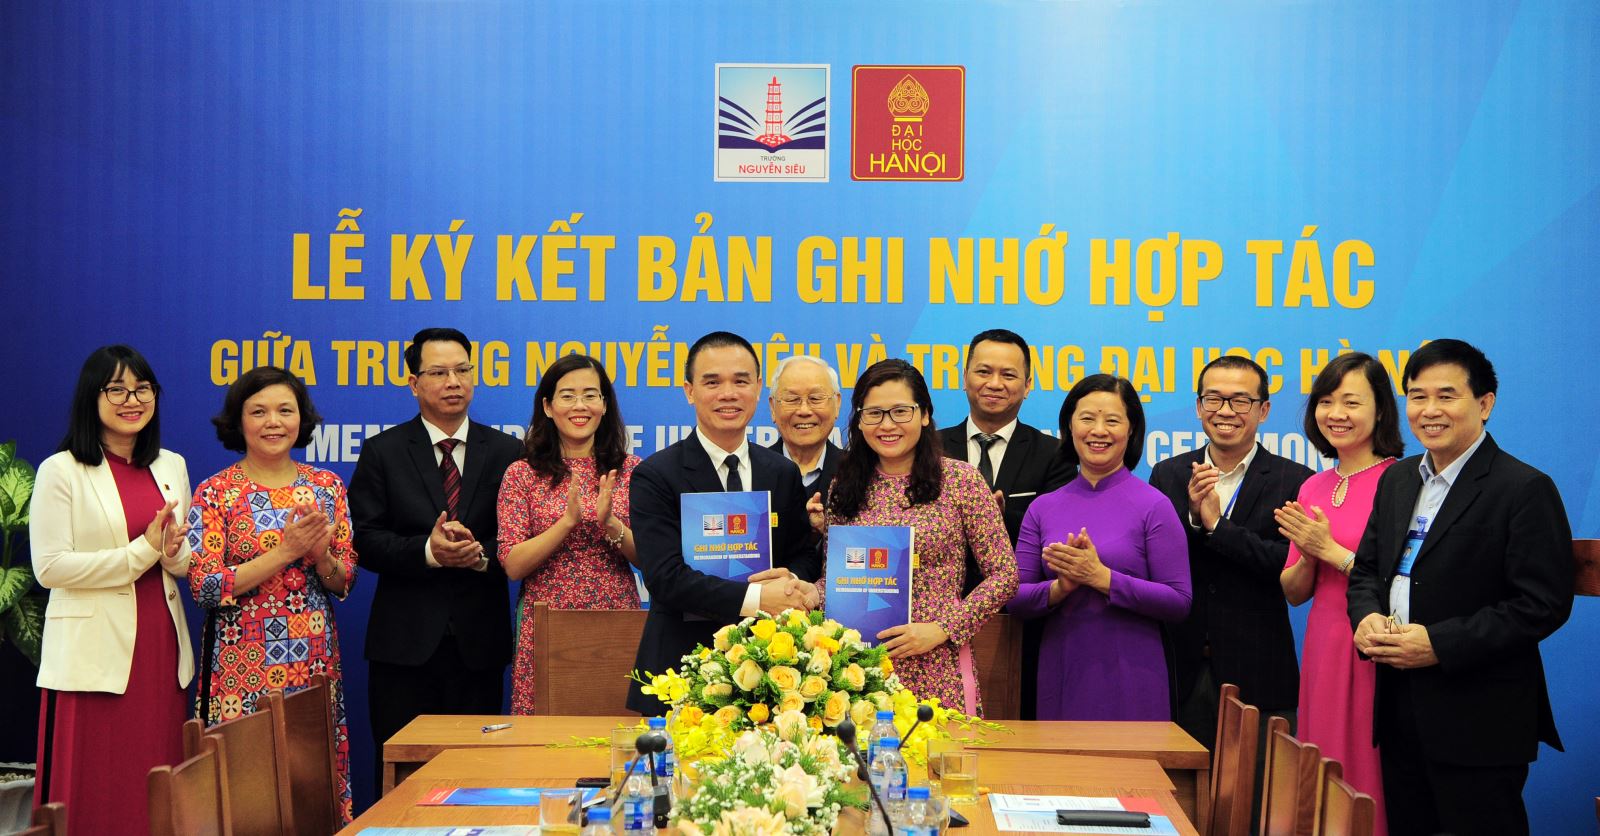 Trường Nguyễn Siêu ký kết ghi nhớ hợp tác với Đại học Hà Nội